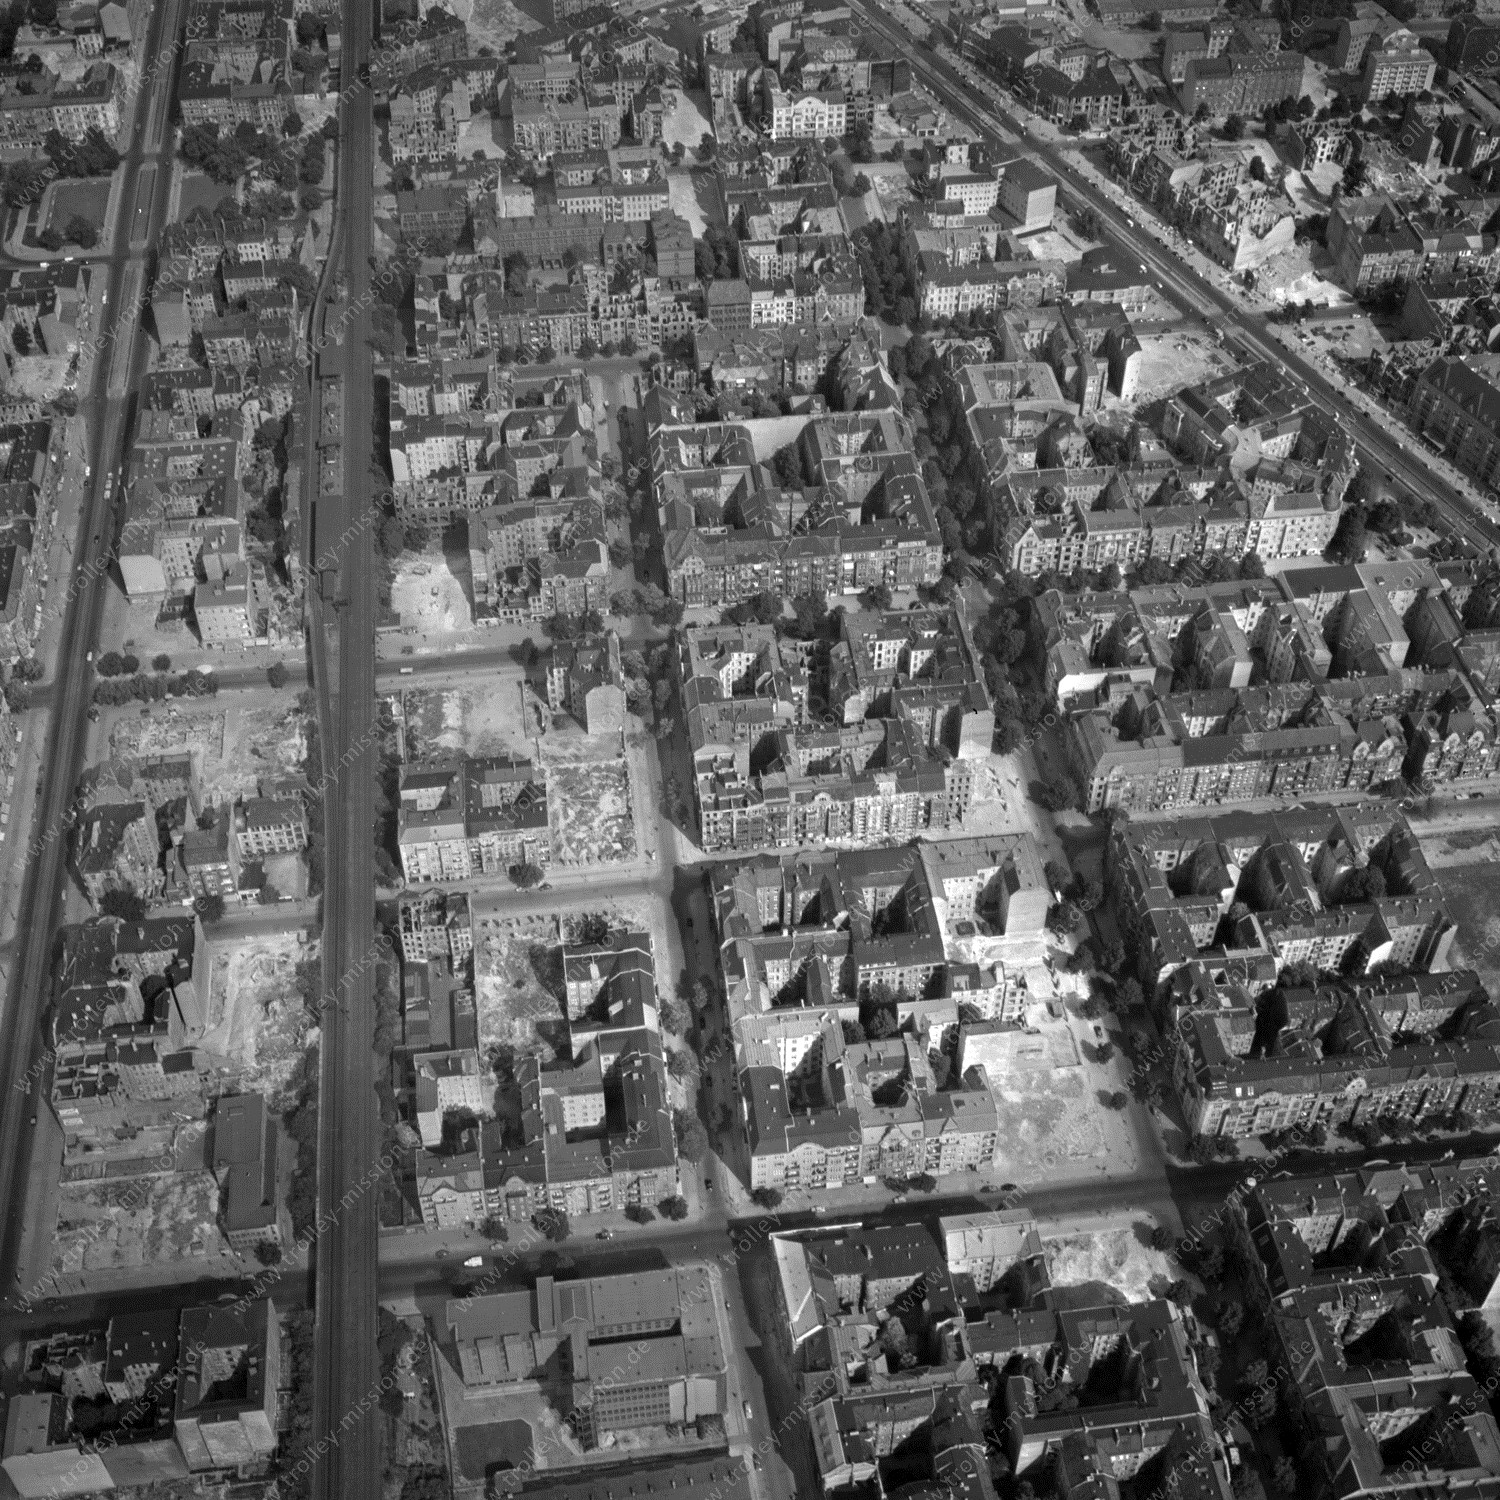 Alte Fotos und Luftbilder von Berlin - Luftbildaufnahme Nr. 02 - Historische Luftaufnahmen von West-Berlin aus dem Jahr 1954 - Flugstrecke Tango